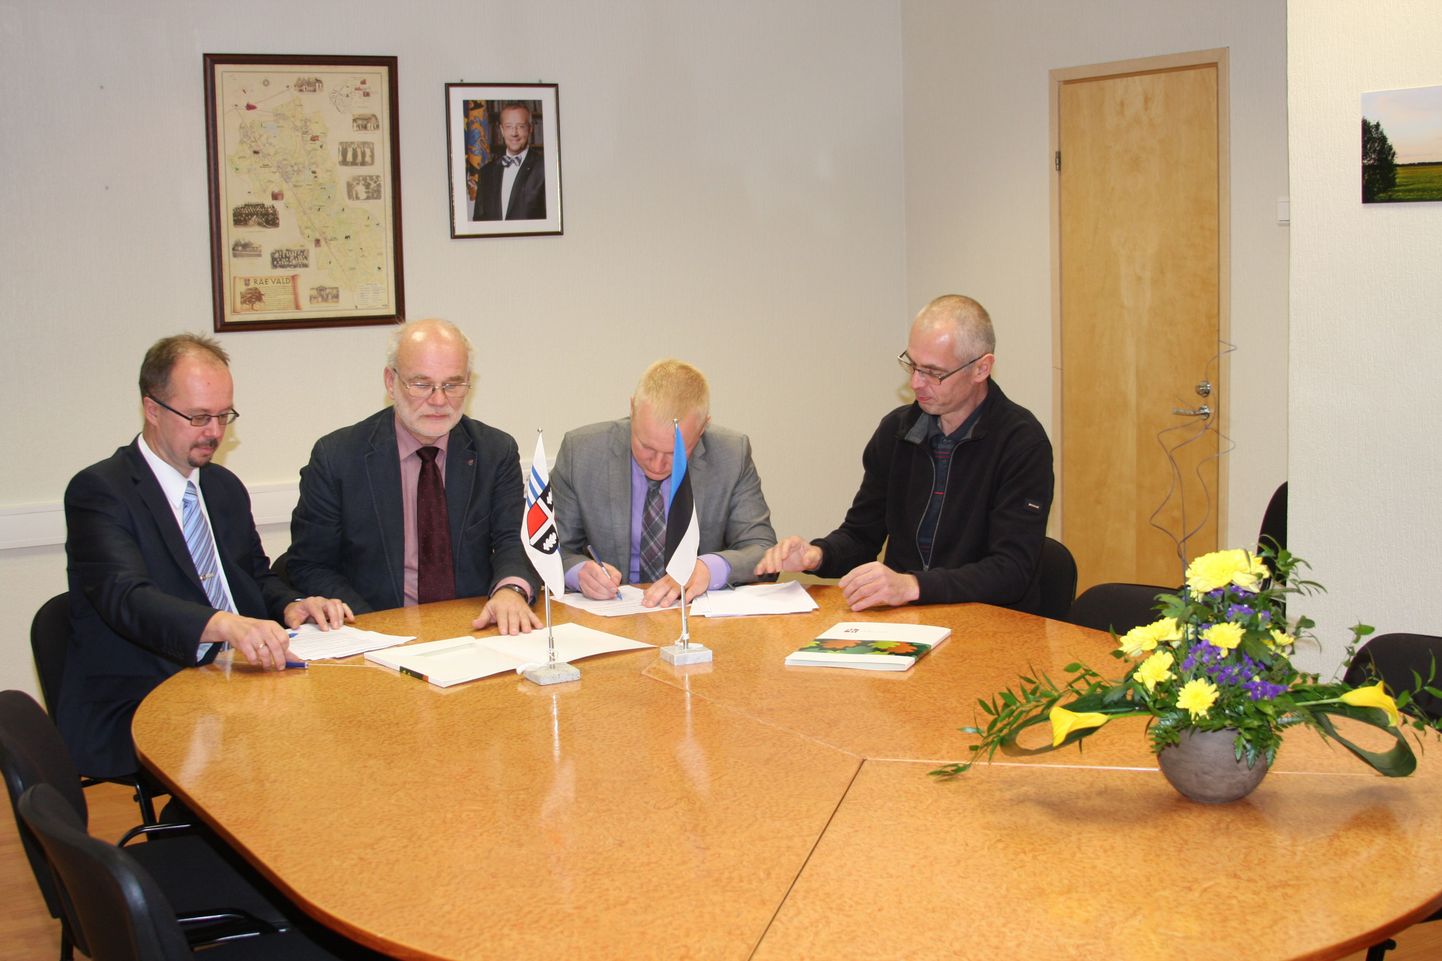 Vasakult IRLi piirkonnajuht Priit Põldmäe, volikogu esimees Agu Laius, vallavanem Mart Võrklaev ja Reformierakonna piirkonna esimees Veigo Gutmann allkirjastamas koalitsioonilepingut.